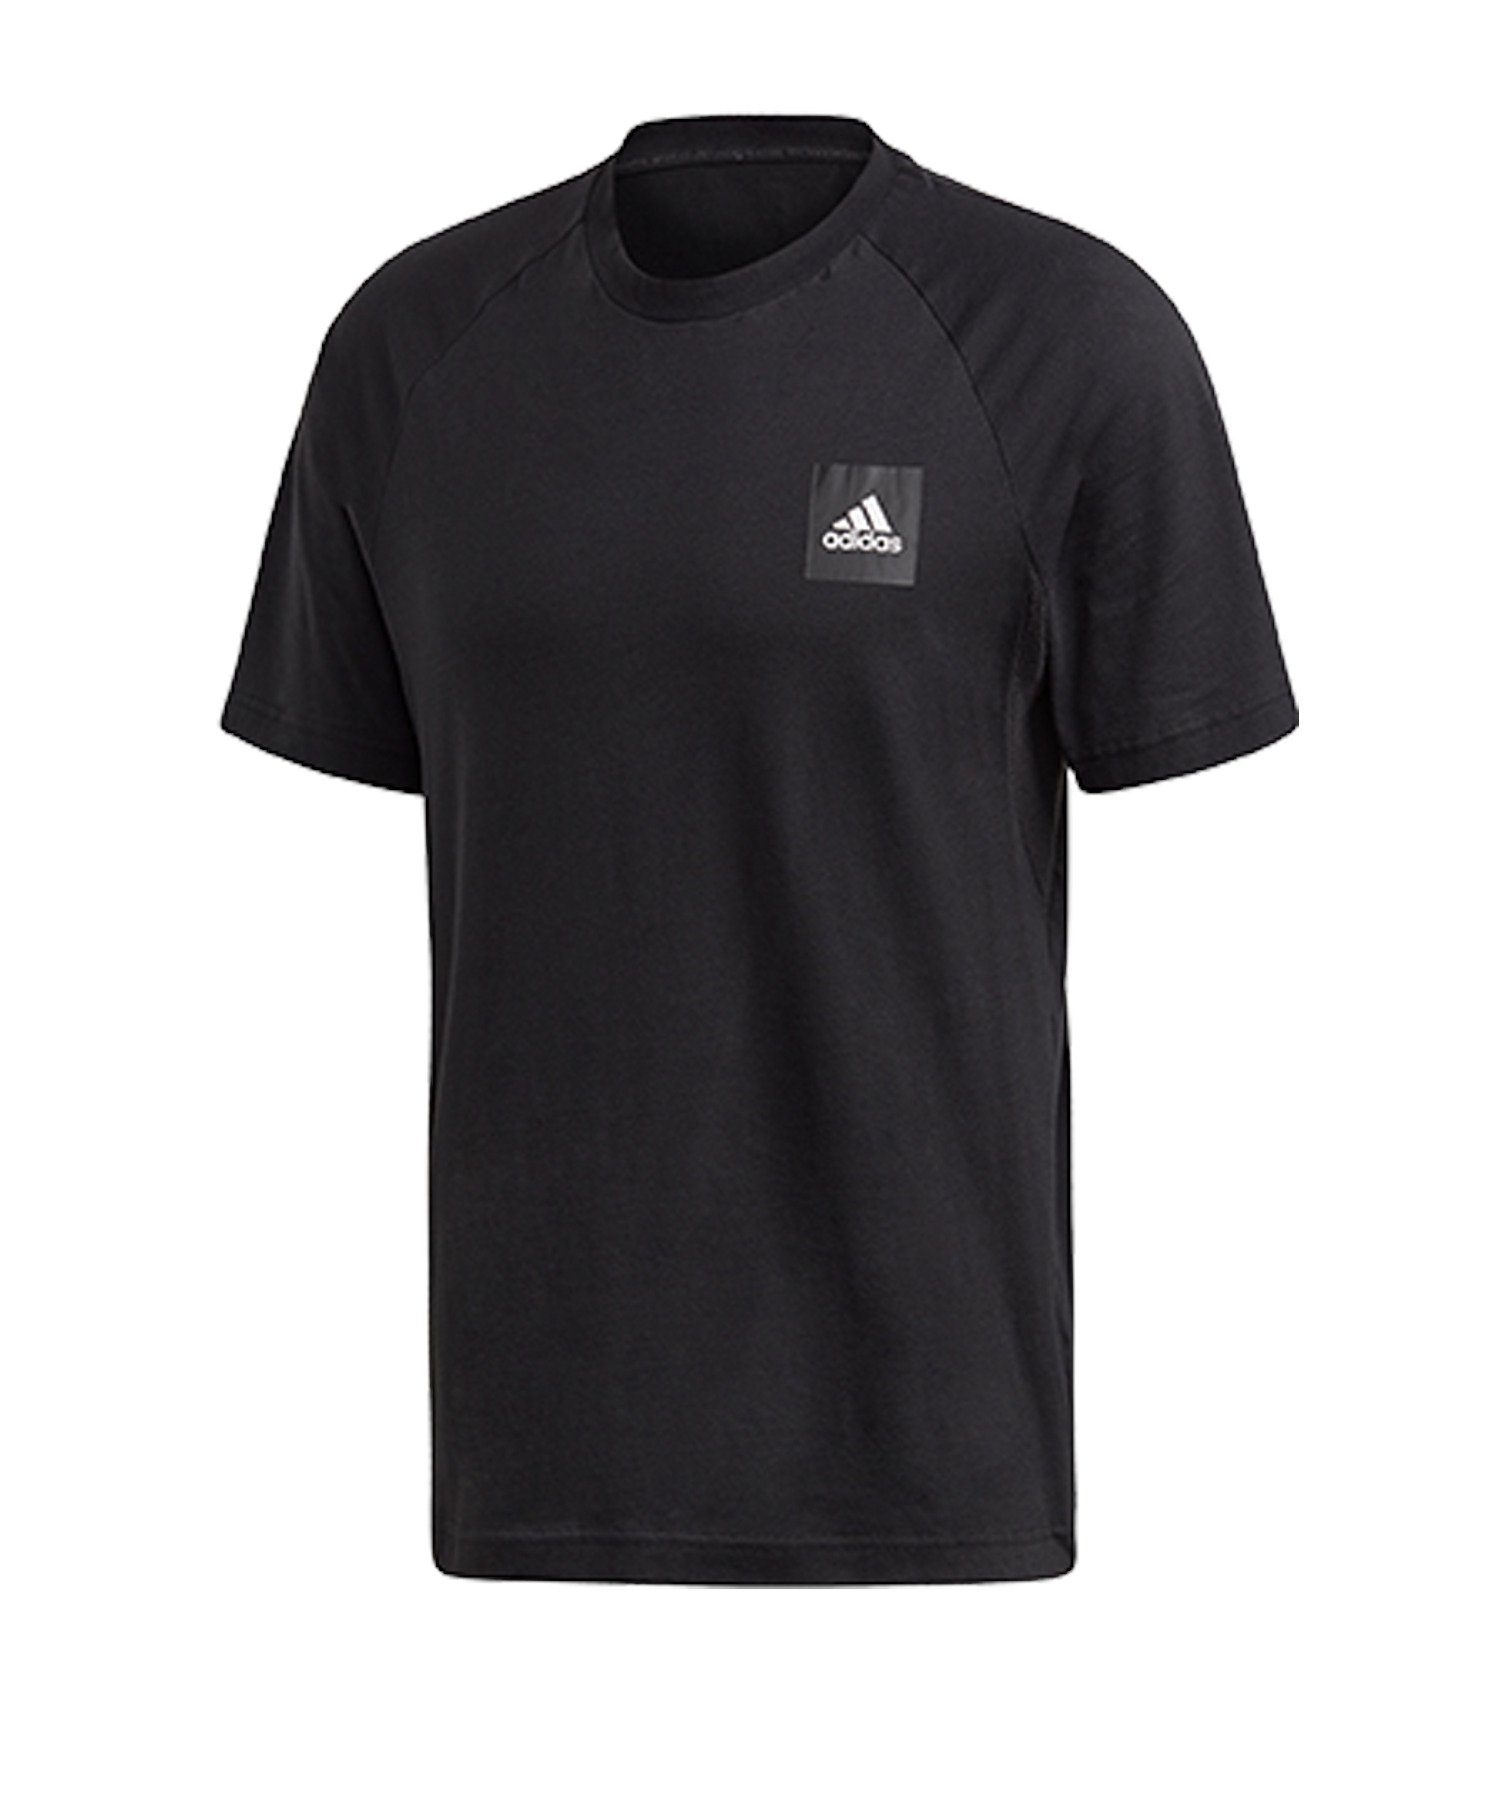 adidas default Performance T-Shirt schwarz T-Shirt MH